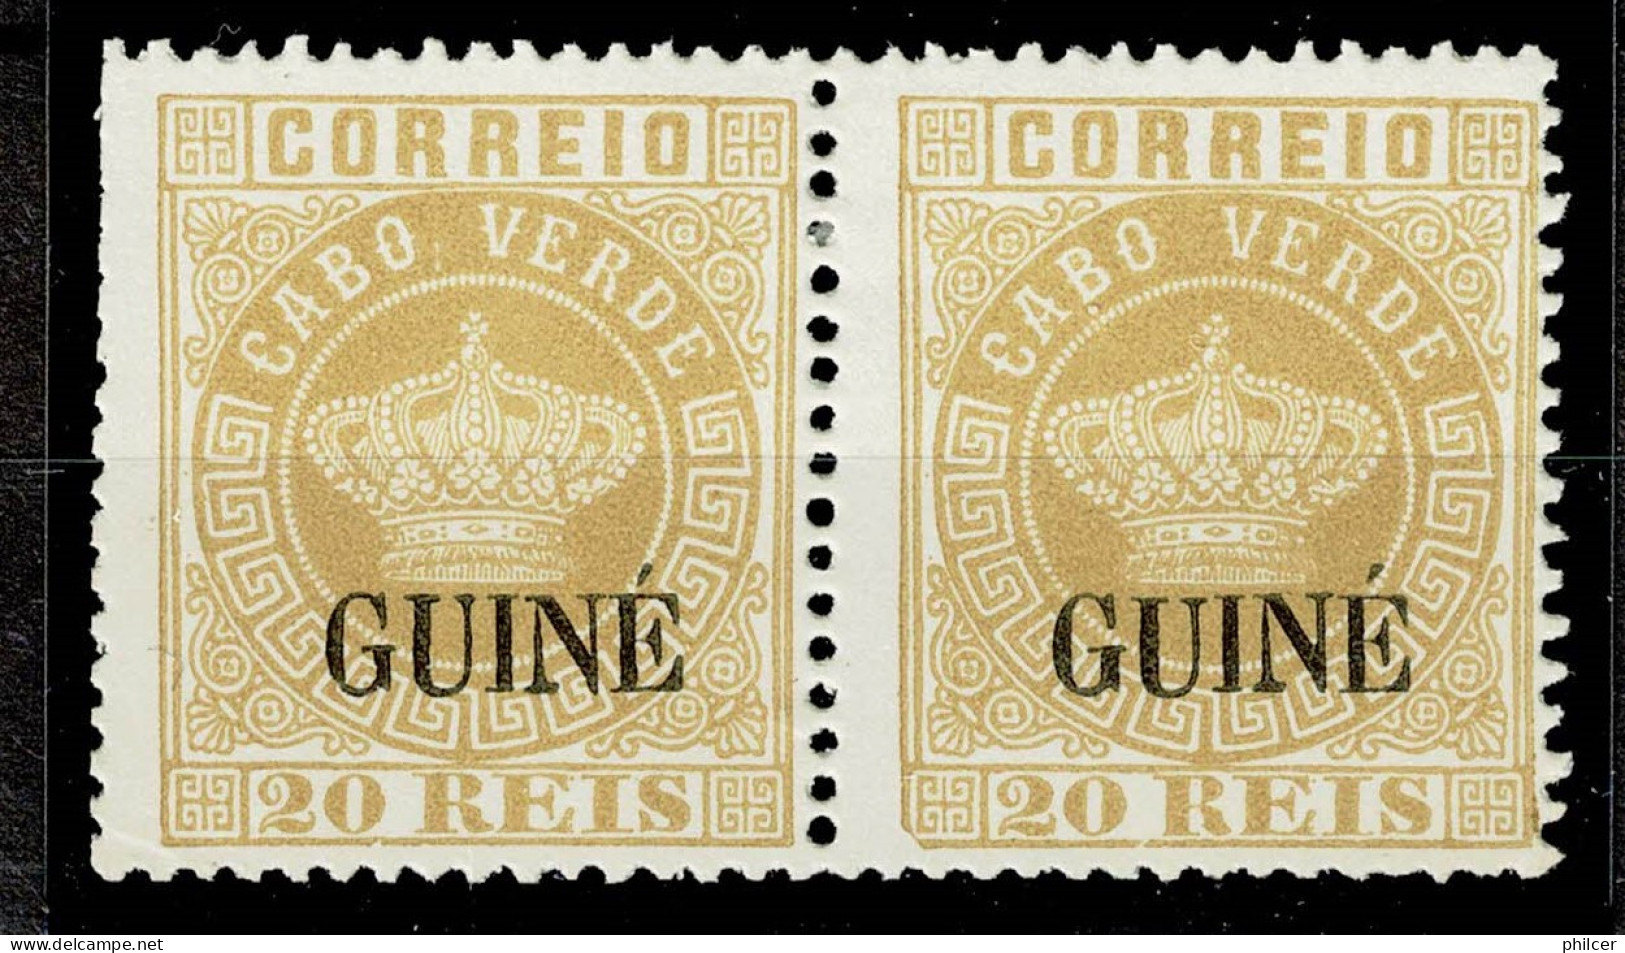 Guiné, 1885, # 12, Reprint, MNG - Portugiesisch-Guinea